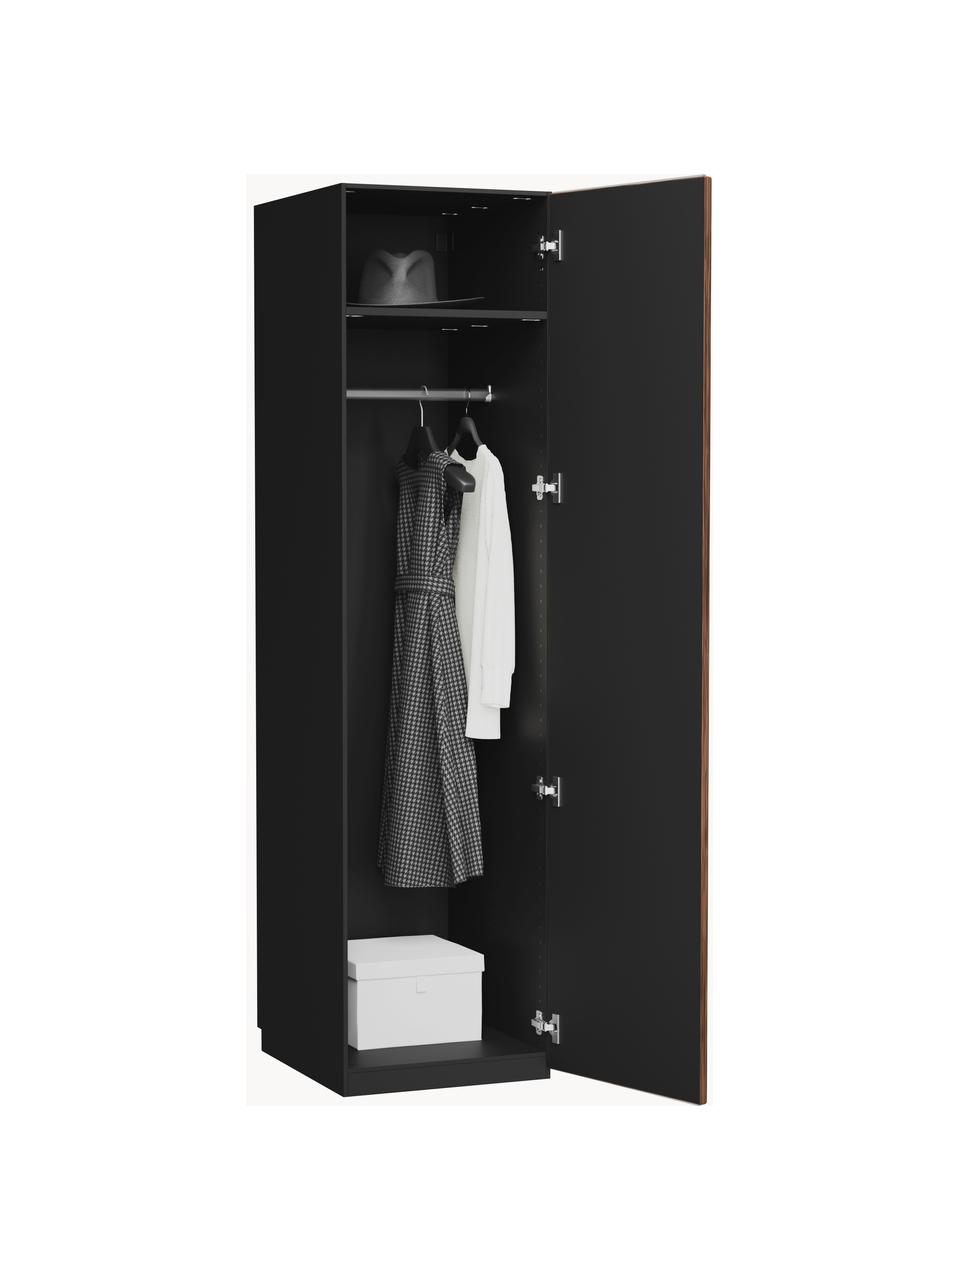 Modulární skříň ve vzhledu ořechového dřeva s otočnými dveřmi Simone, šířka 50 cm, více variant, Vzhled ořechového dřeva, černá, Interiér Basic, Š 50 x V 200 cm